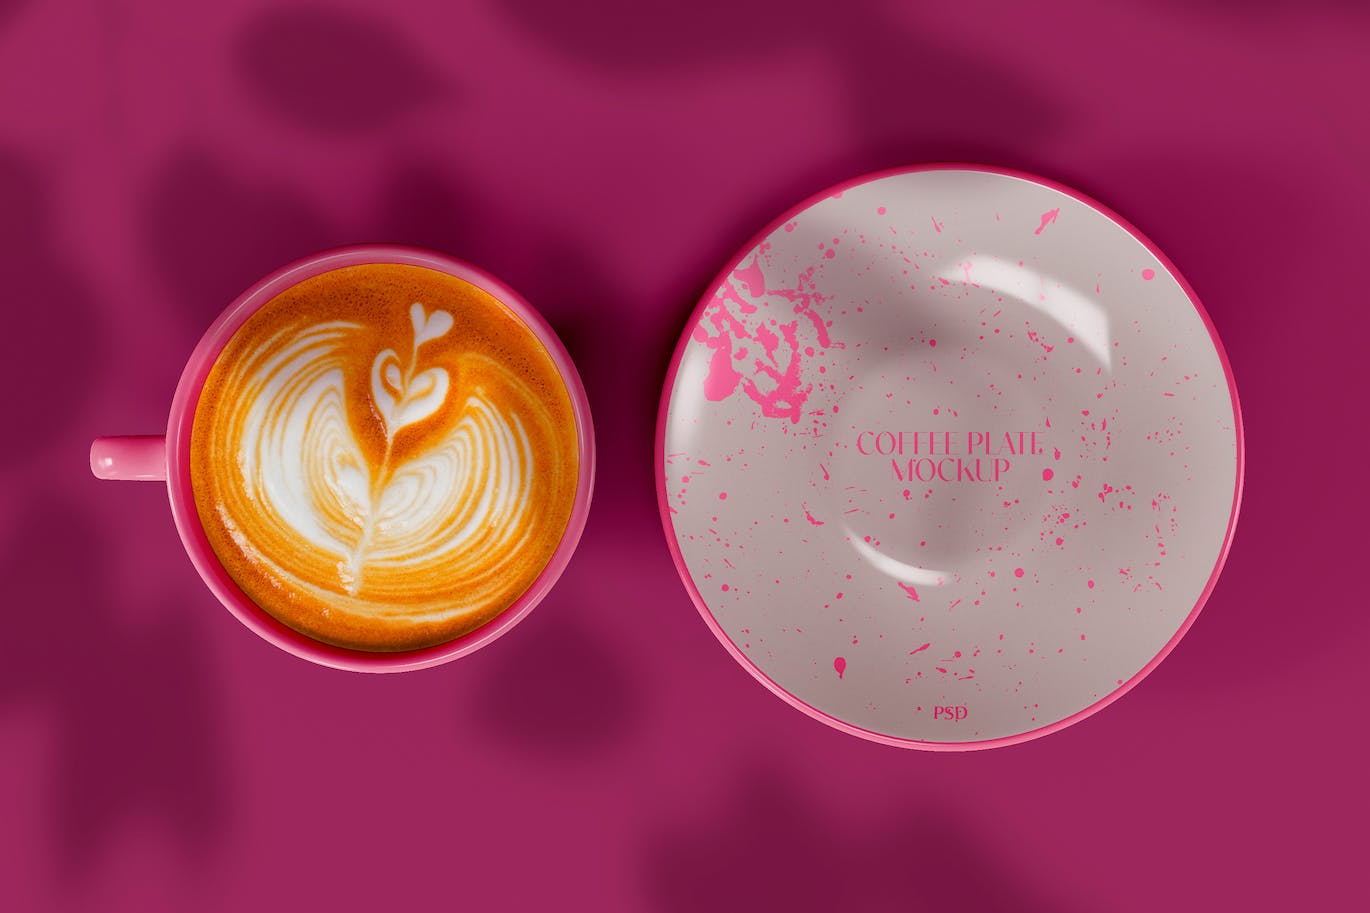 陶瓷咖啡杯托盘设计样机图 Ceramic Mugs Mockup 样机素材 第1张